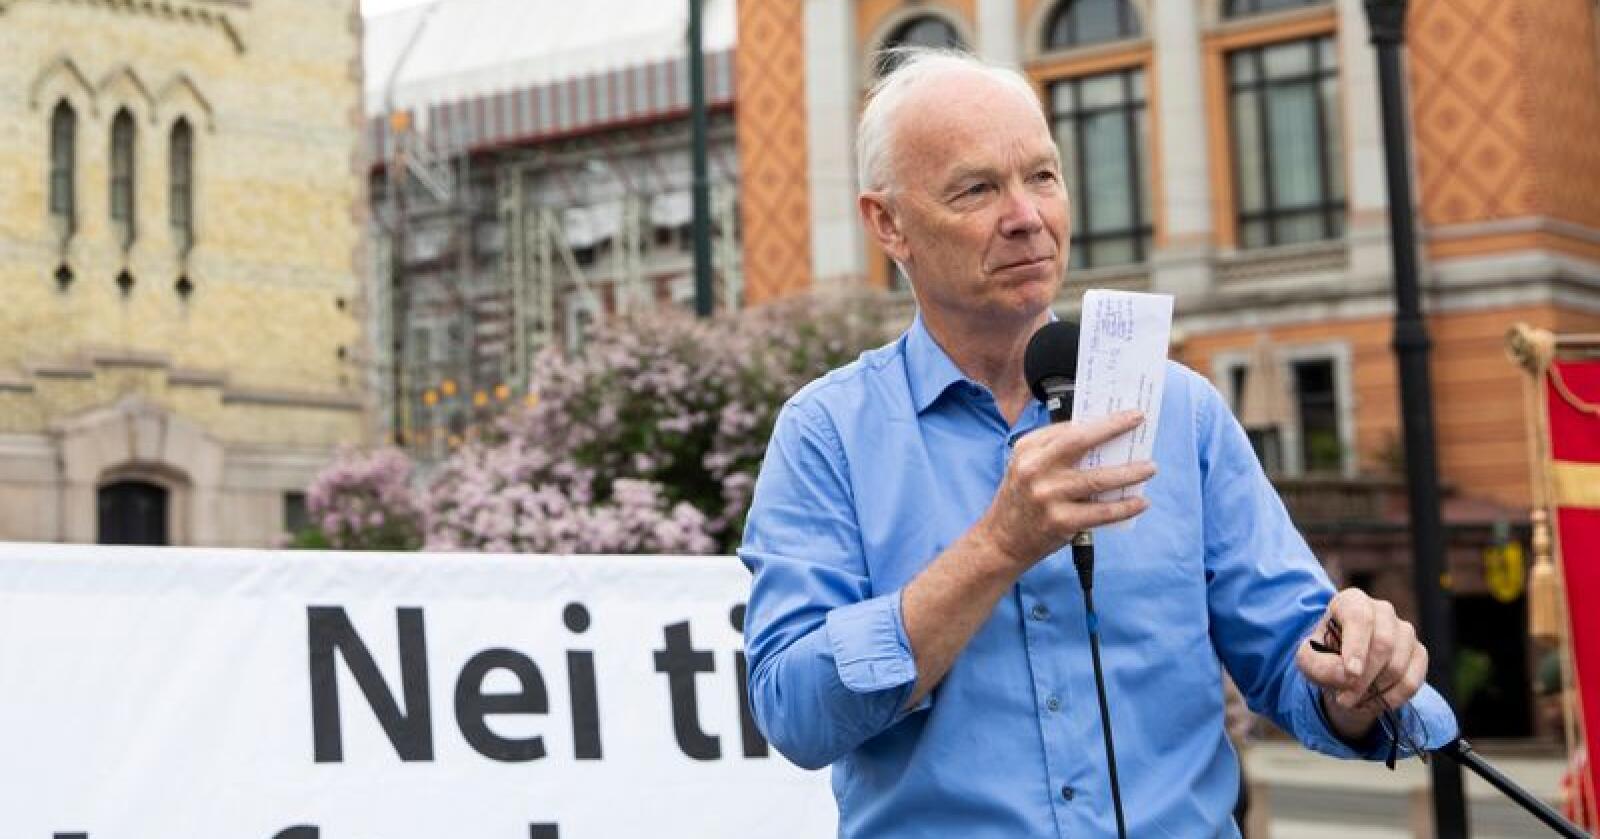 67 prosent seier nei til norsk medlemskap i EU. Per Olaf Lundteigen fra Senterpartier seier arbeidslivspolitikken er ein del av årsaken.  Foto: Tore Meek / NTB scanpix